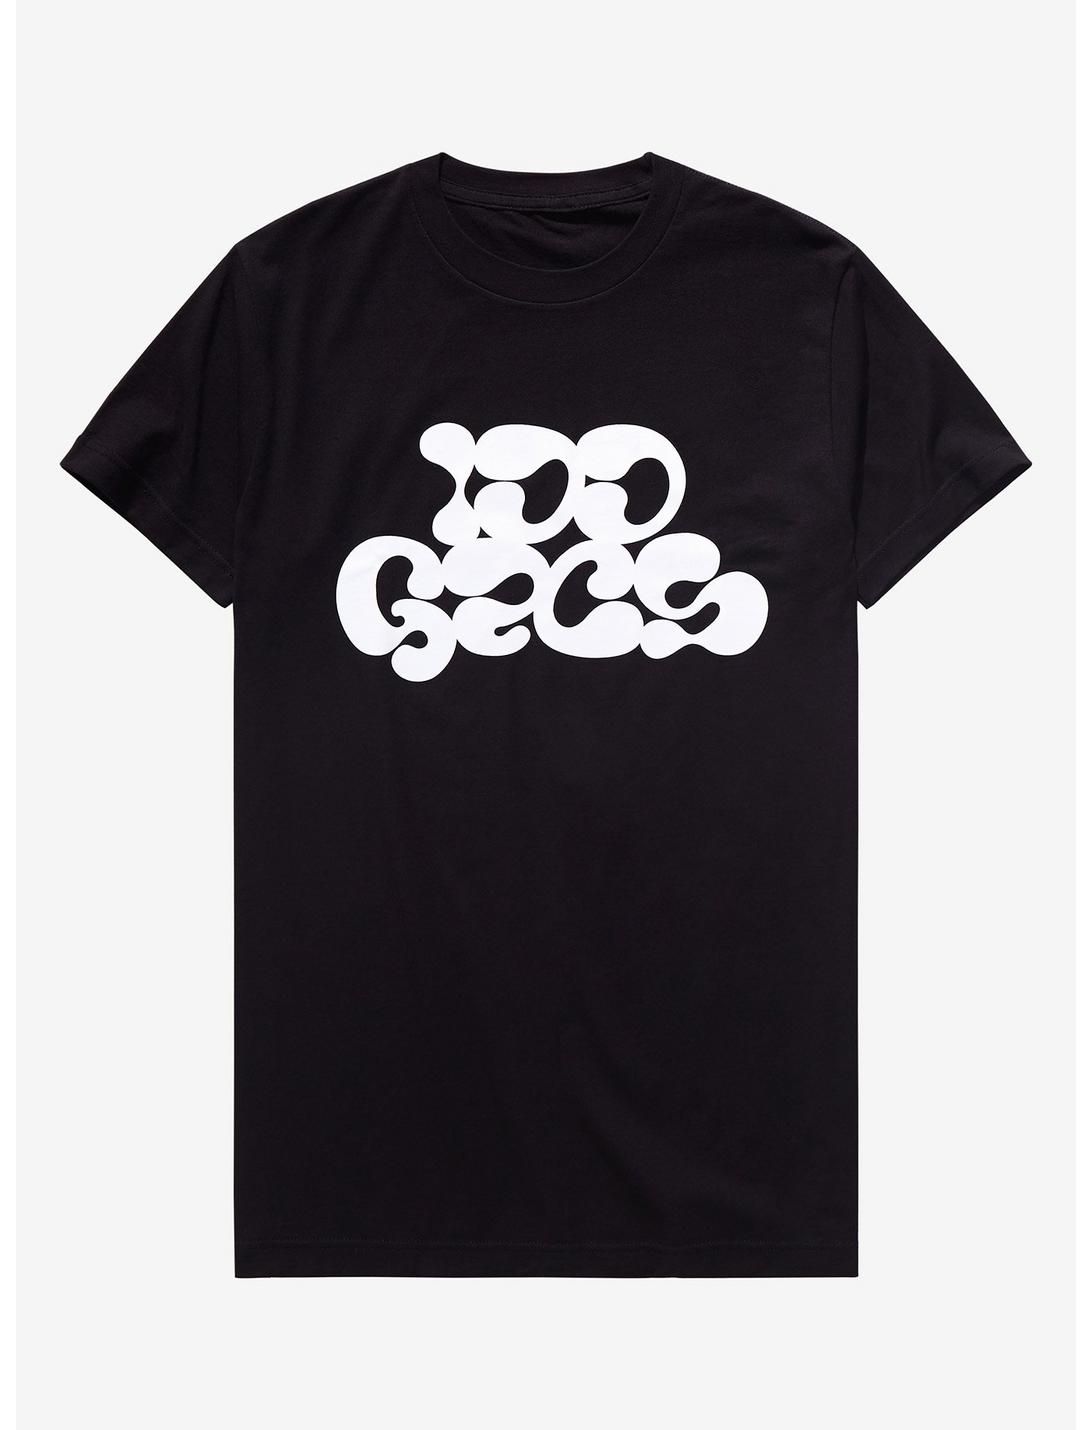 100 Gecs Logo T-Shirt, BLACK, hi-res